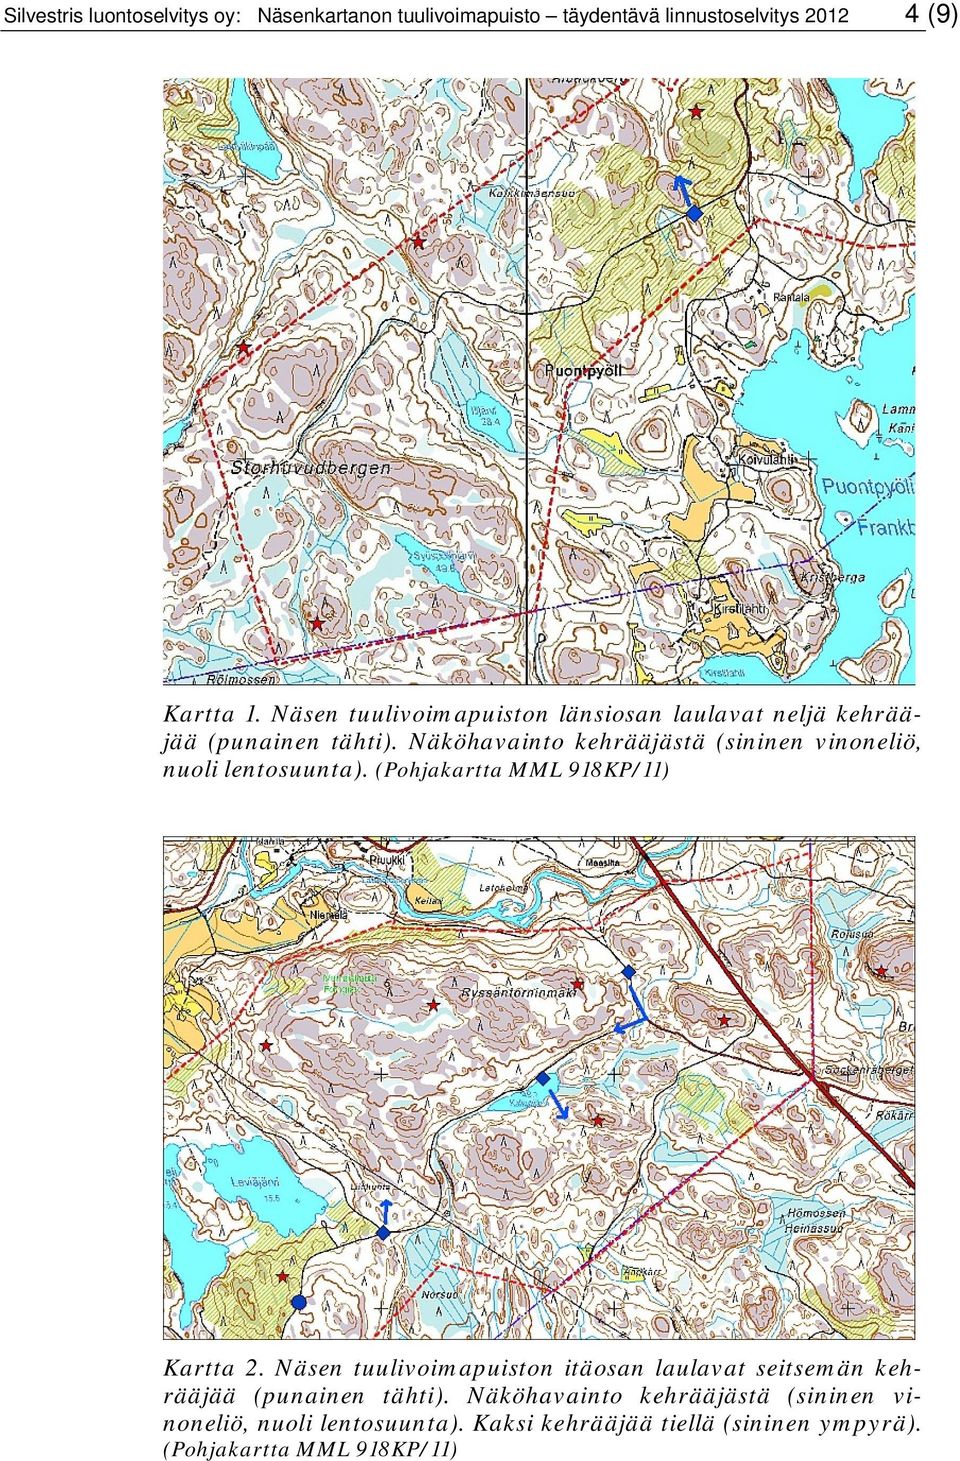 Näköhavainto kehrääjästä (sininen vinoneliö, nuoli lentosuunta). (Pohjakartta MML 918KP/11) Kartta 2.